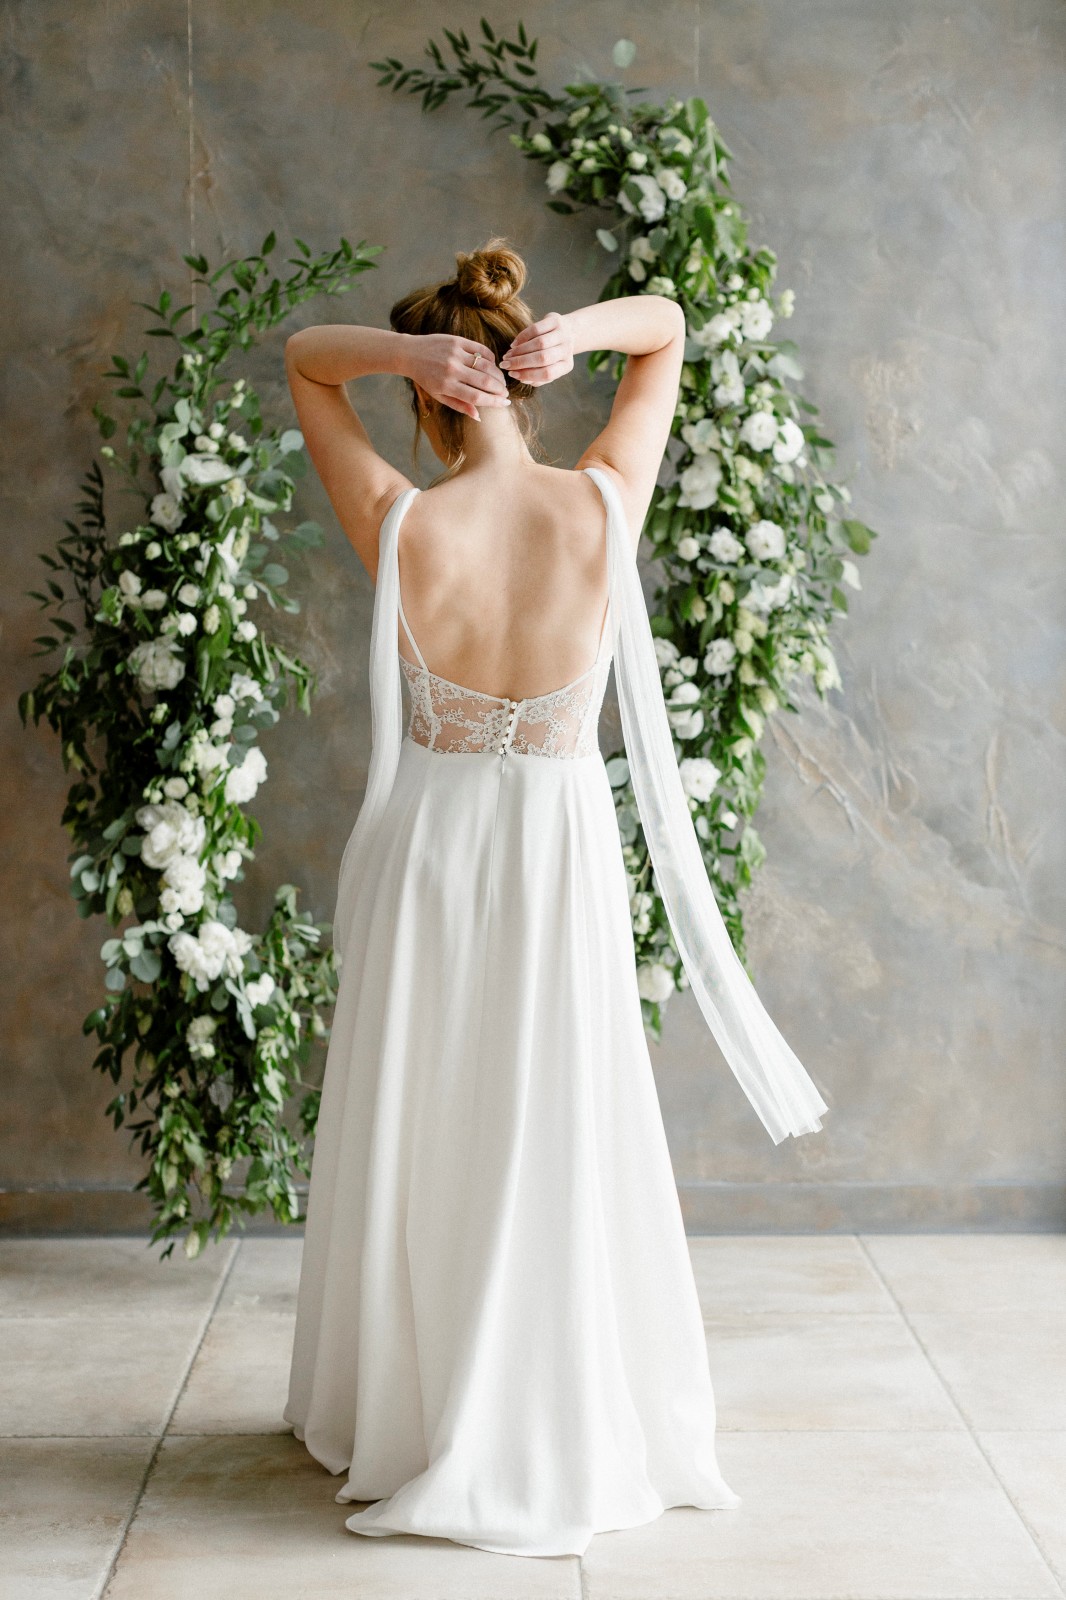 Une jolie robe de mariée fabriqué en France avec des chutes de tissu.